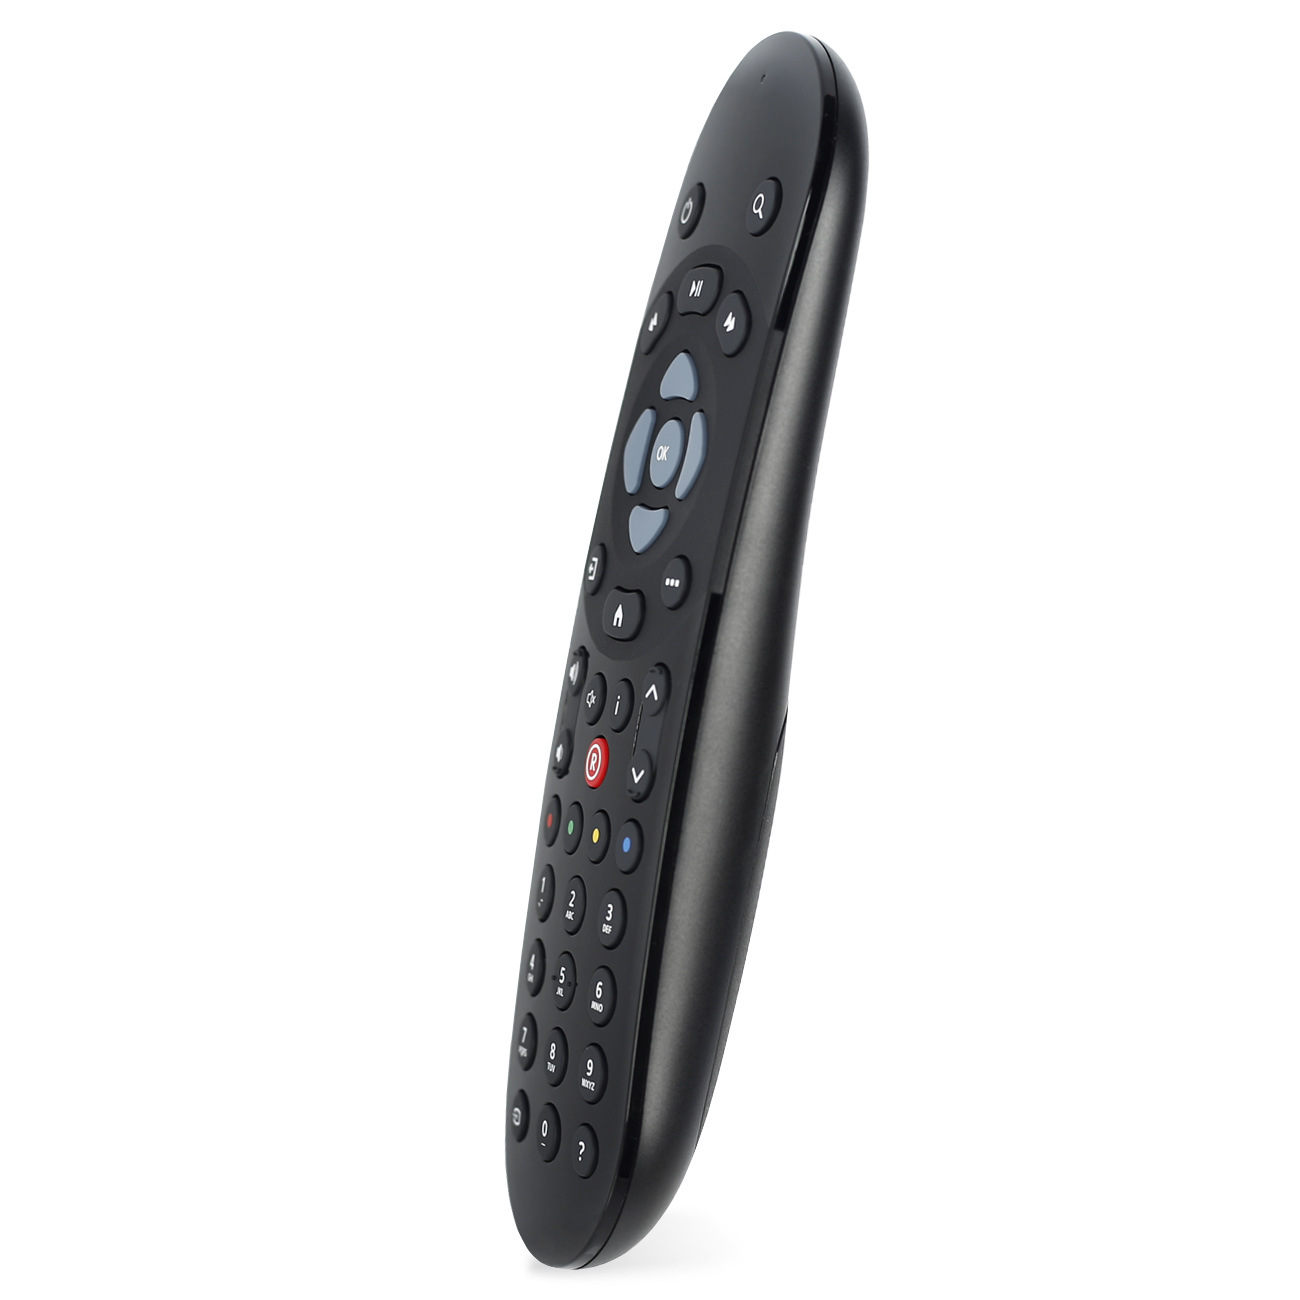 Universal-IR-TV-Remote-Control-for-SKY-Q-BOX-Sky-Broadcasting-Company-Sky-Q-Set-Top-Box-1593497-4